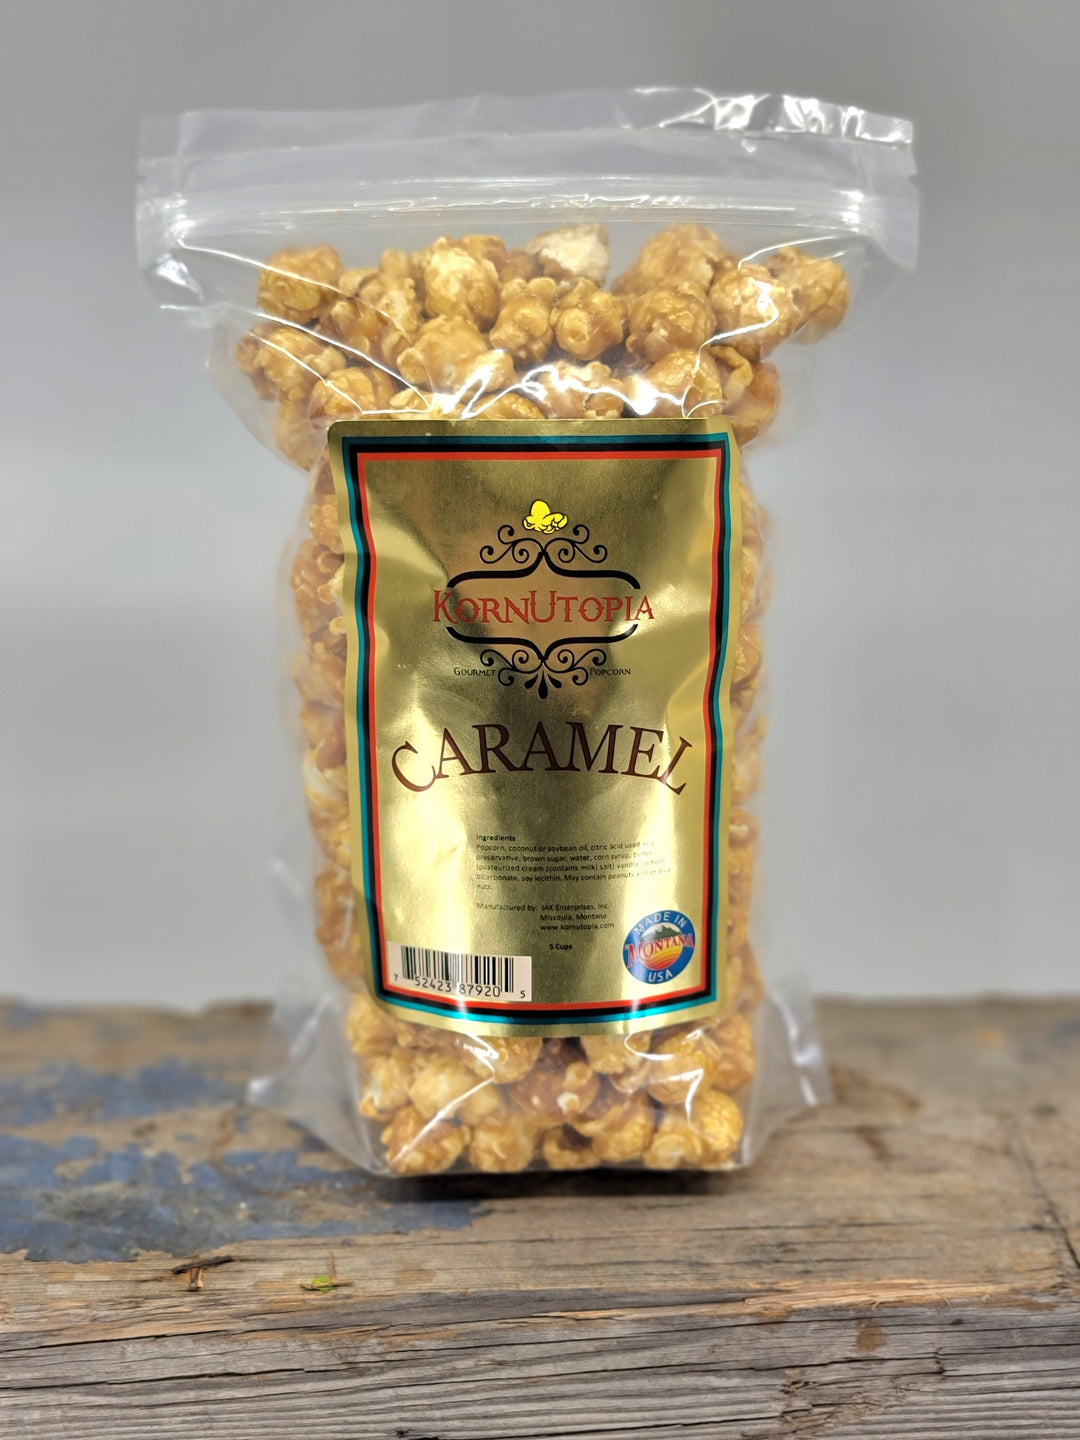 Caramel Gourmet Popcorn